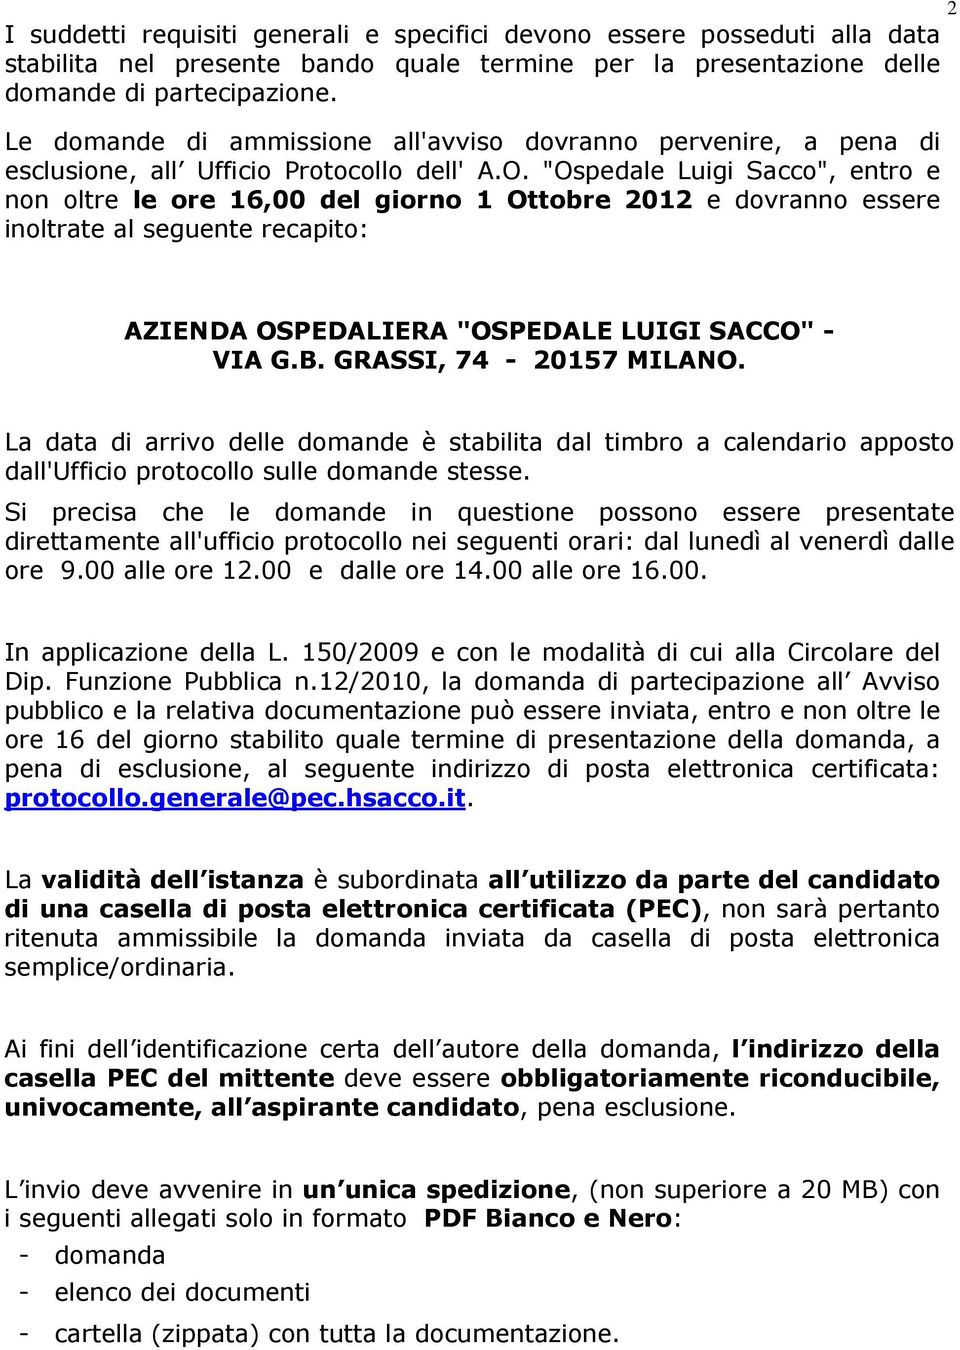 "Ospedale Luigi Sacco", entro e non oltre le ore 16,00 del giorno 1 Ottobre 2012 e dovranno essere inoltrate al seguente recapito: AZIENDA OSPEDALIERA "OSPEDALE LUIGI SACCO" - VIA G.B.